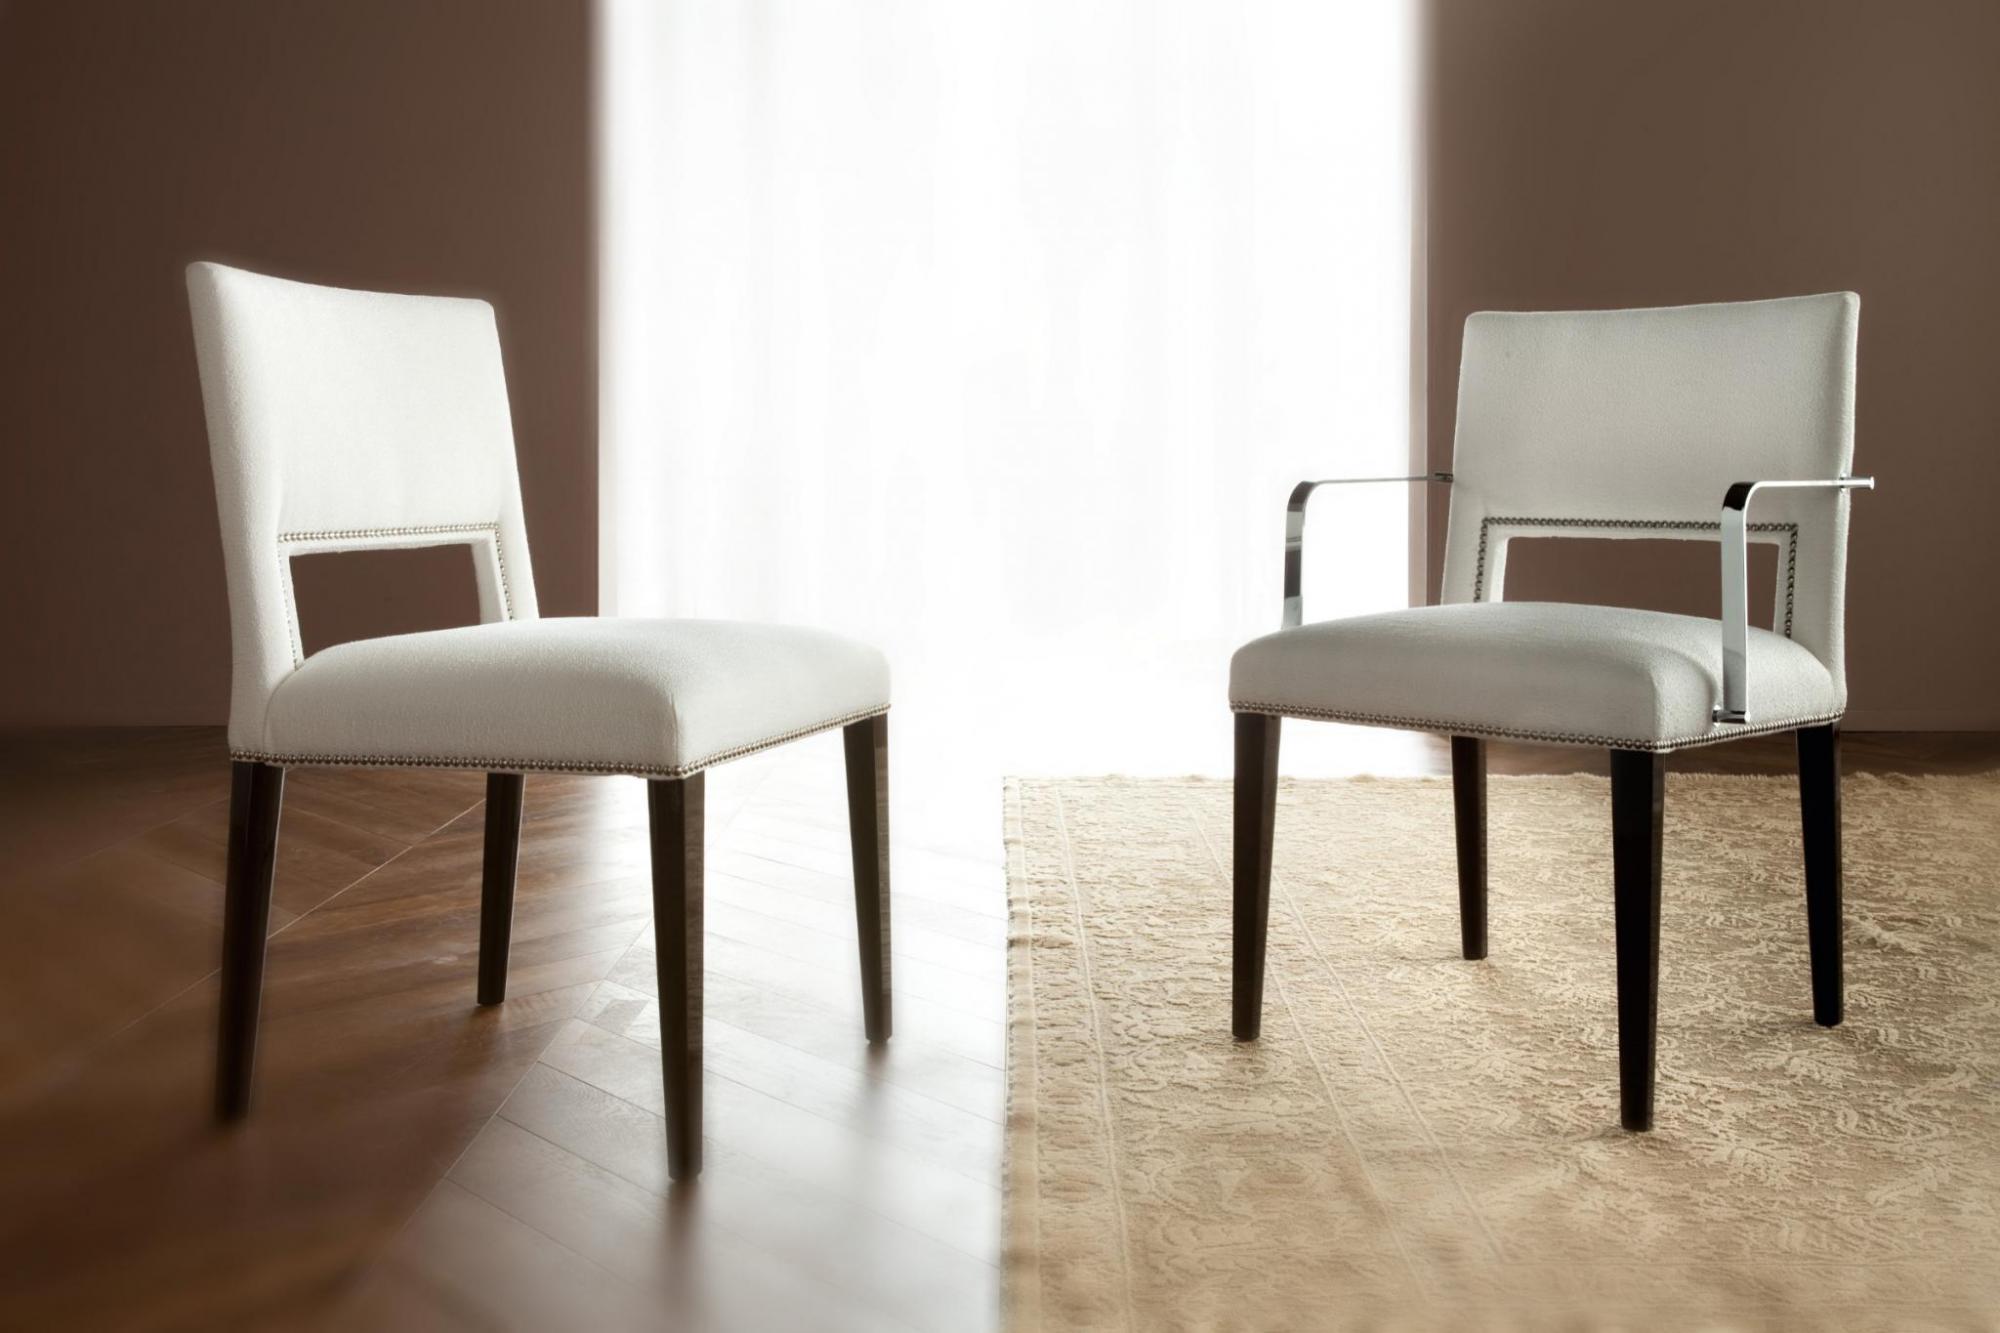 意大利家具costantinipietro的chairs-Hampton 餐椅细节图